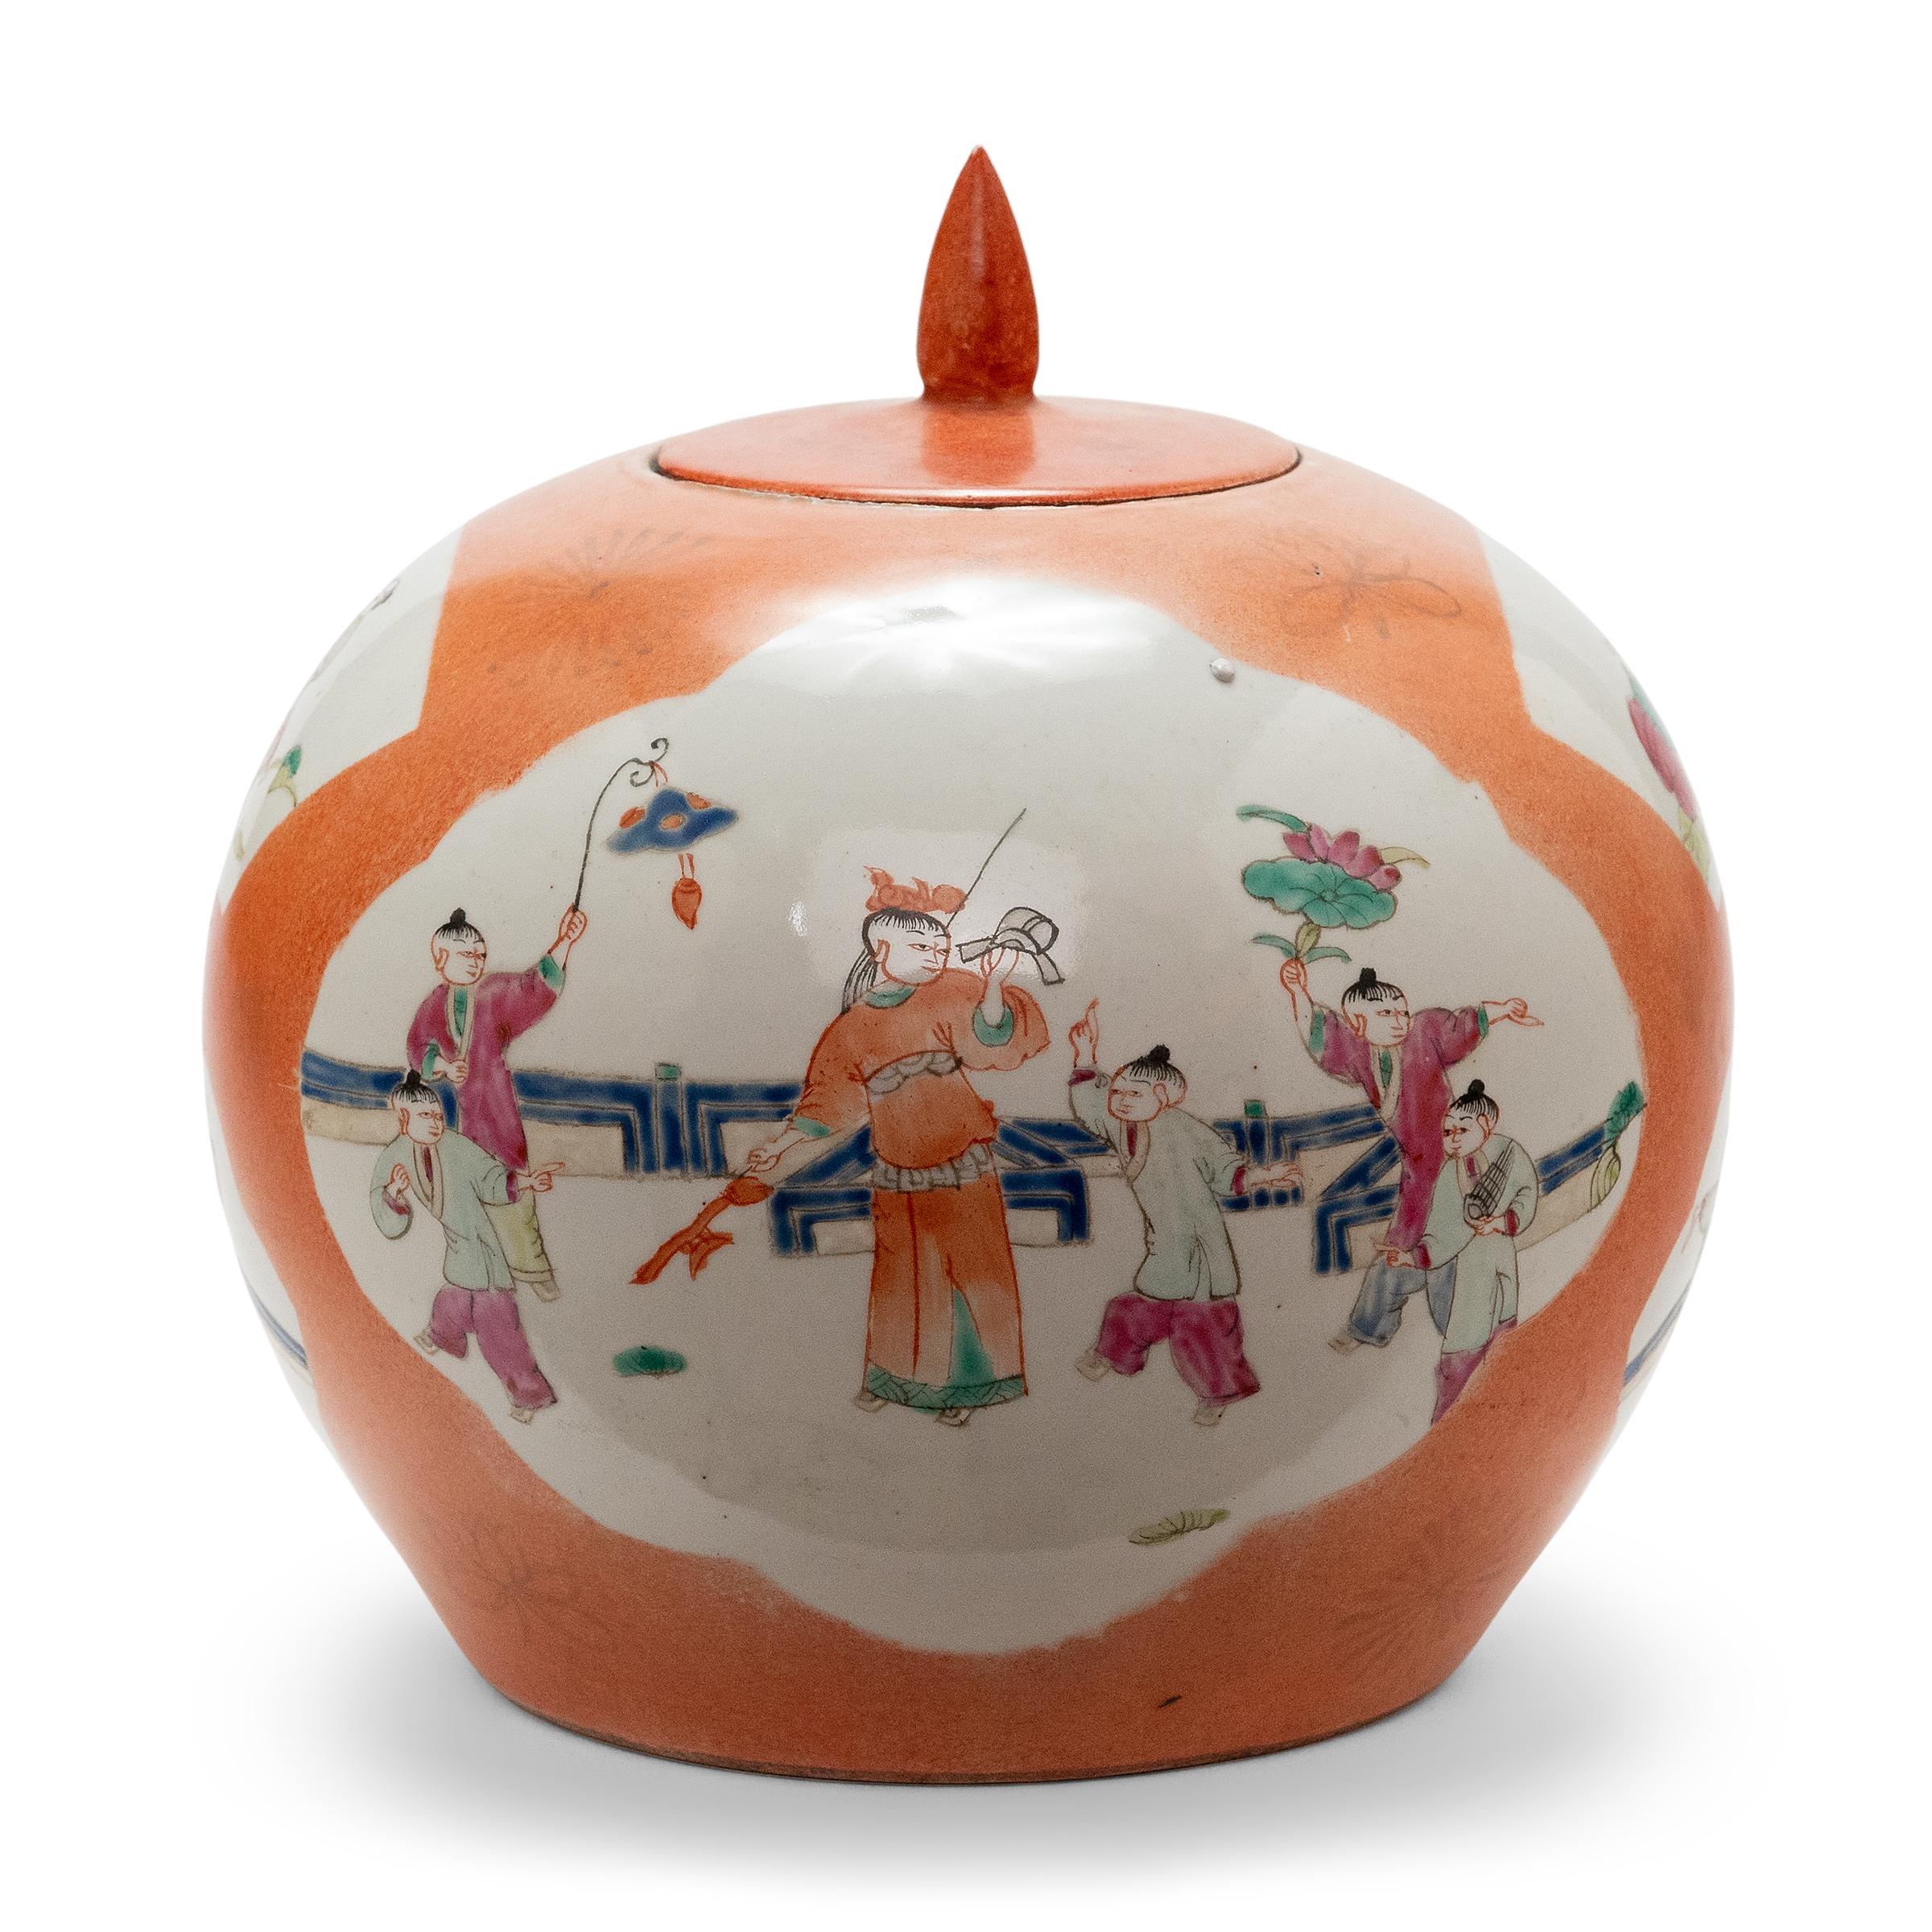 Chinese Export Round Chinese Persimmon Orange Jar, c. 1900